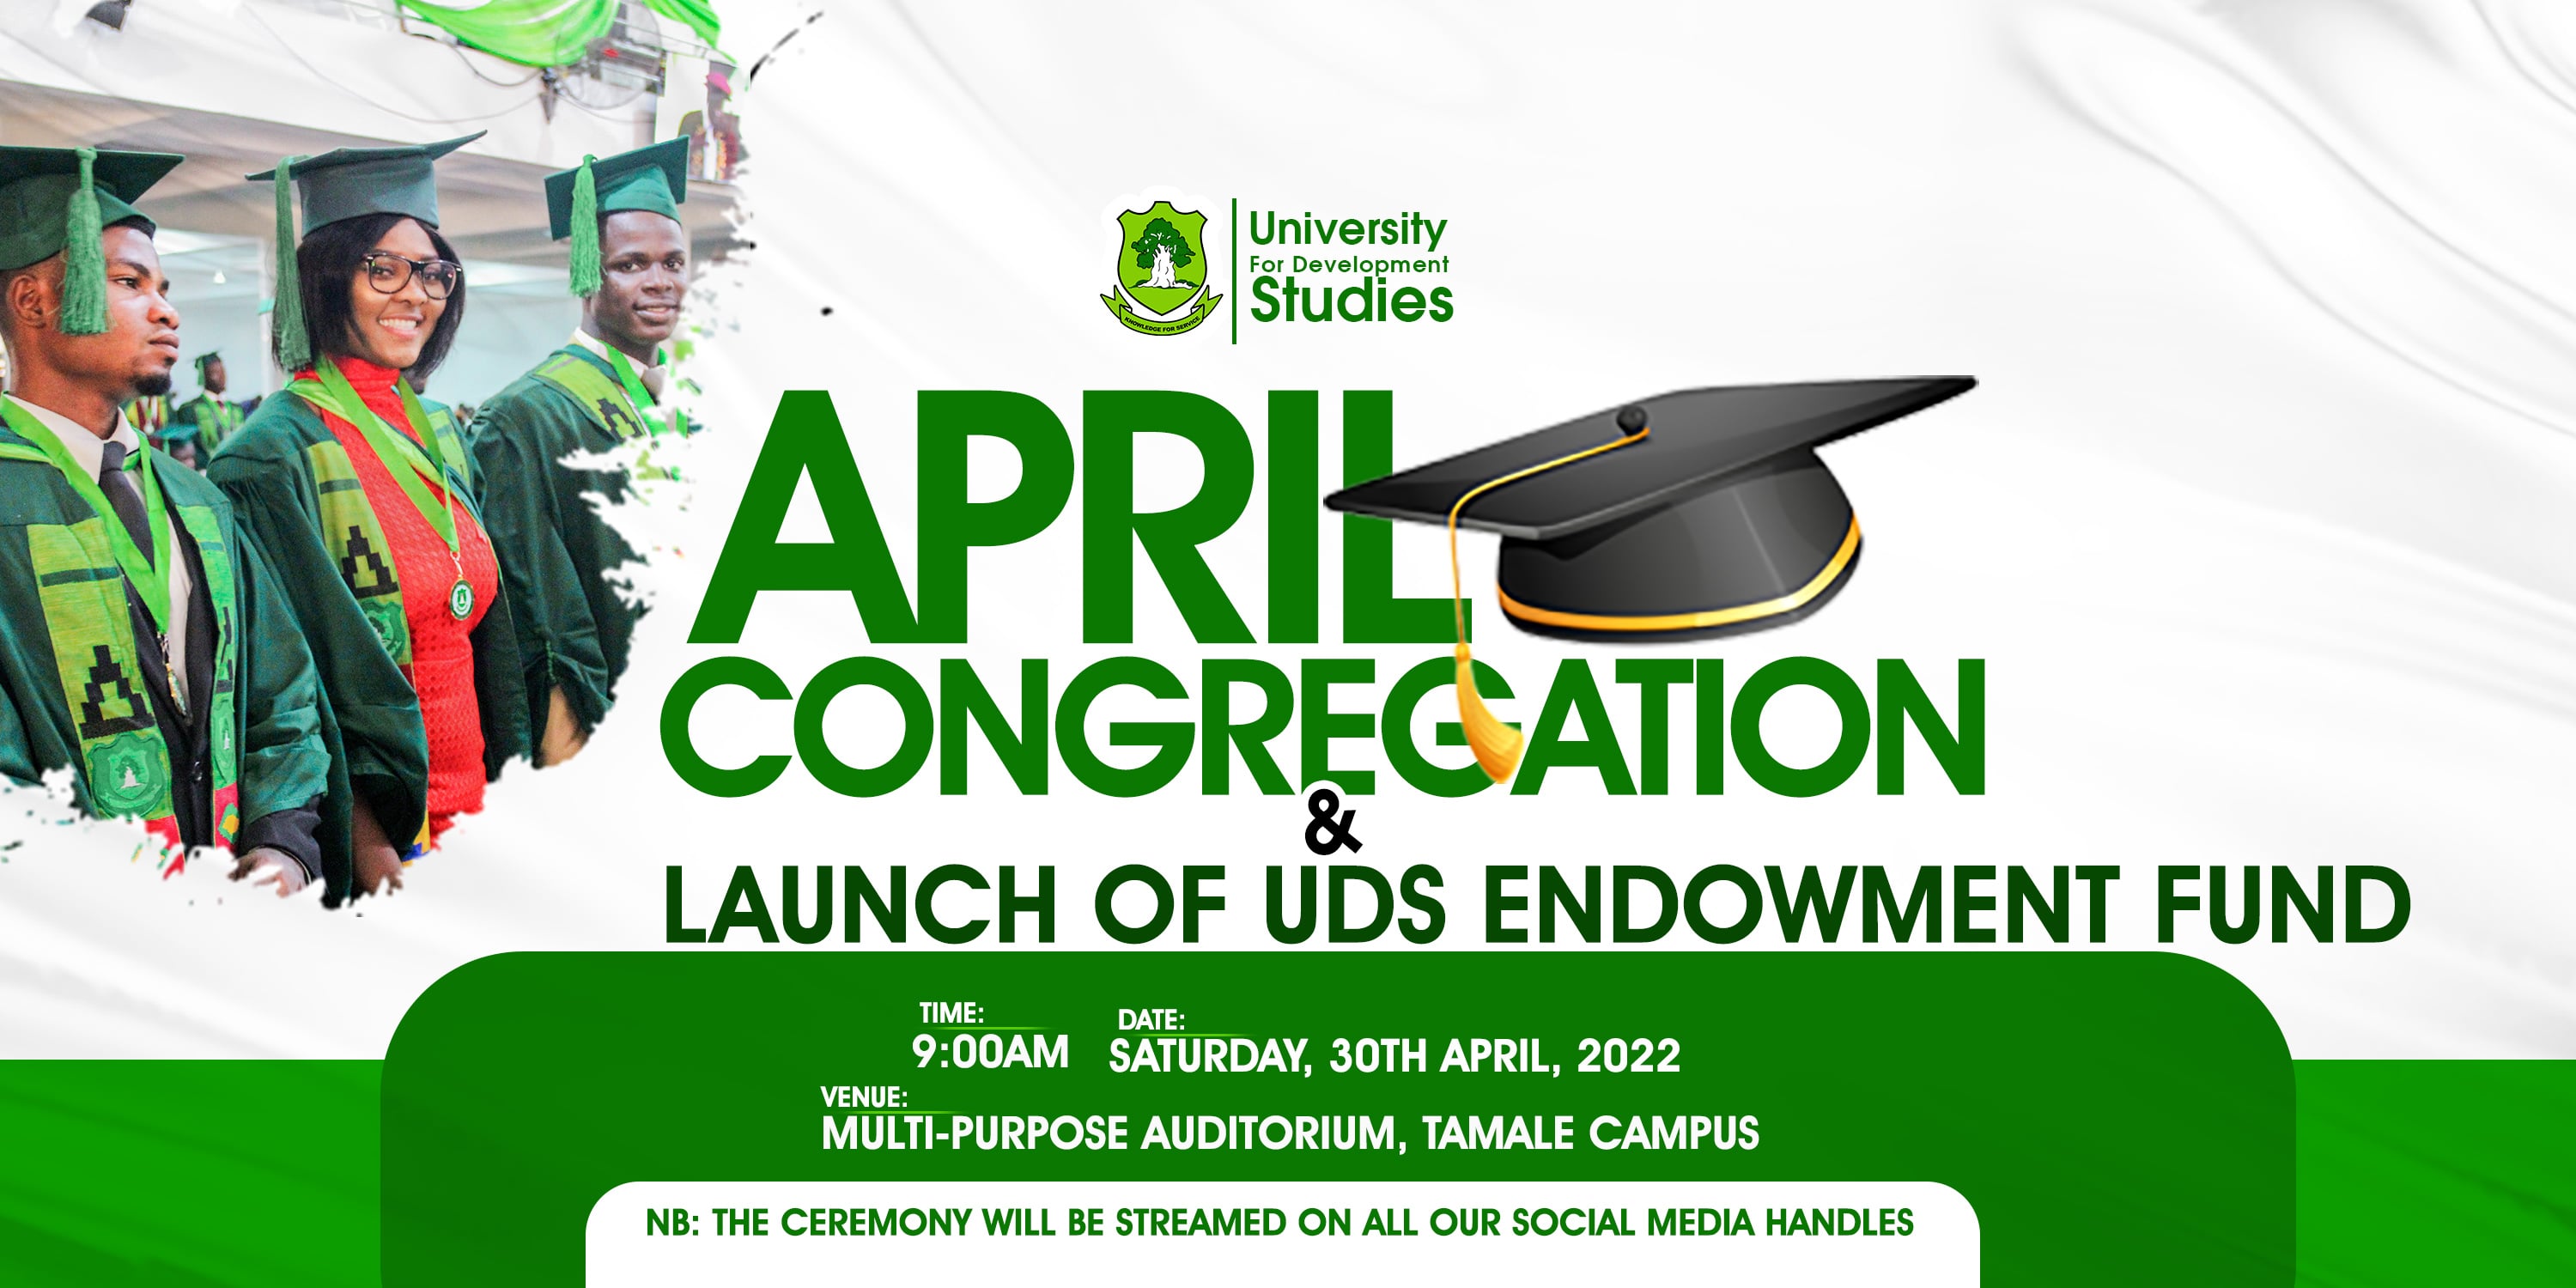 All Set For UDS' April Congregation - Registrar Indicates